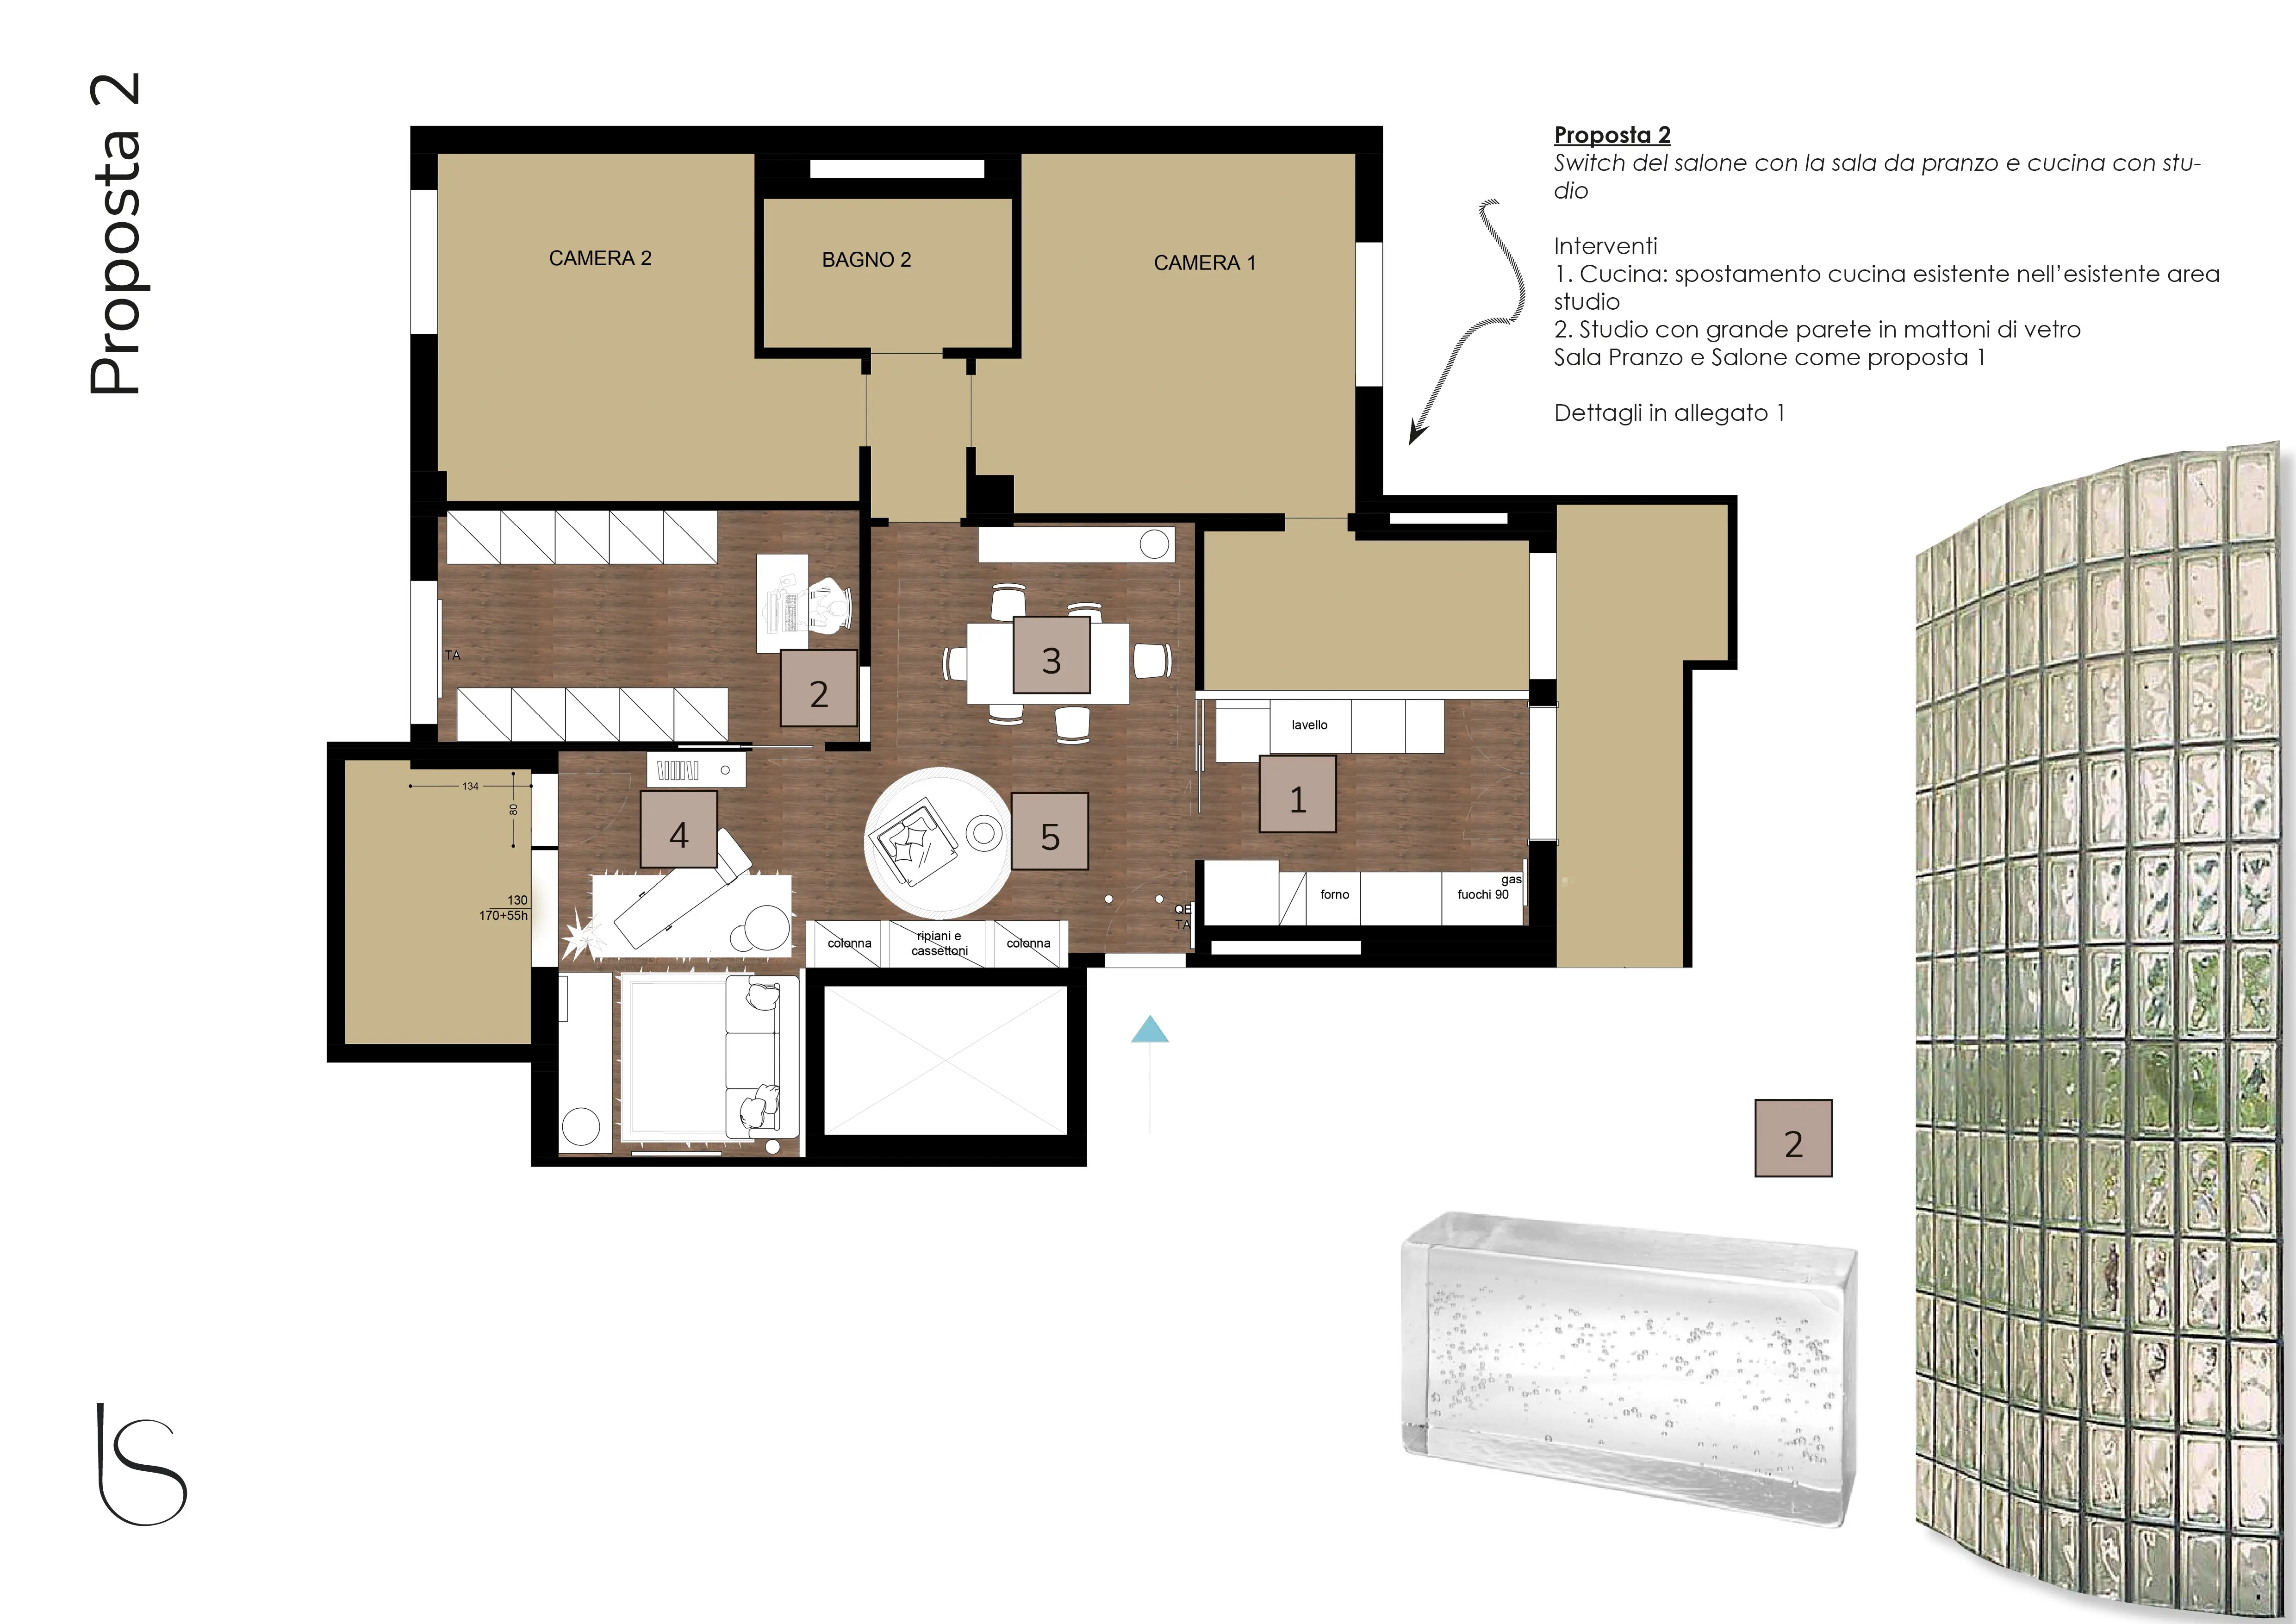 Pianta redistribuzione spazi proposta 2 a cura dello studio Elles Interior Design, che ha guidato la consulenza di interior design per un appartamento in via di ristrutturazione.